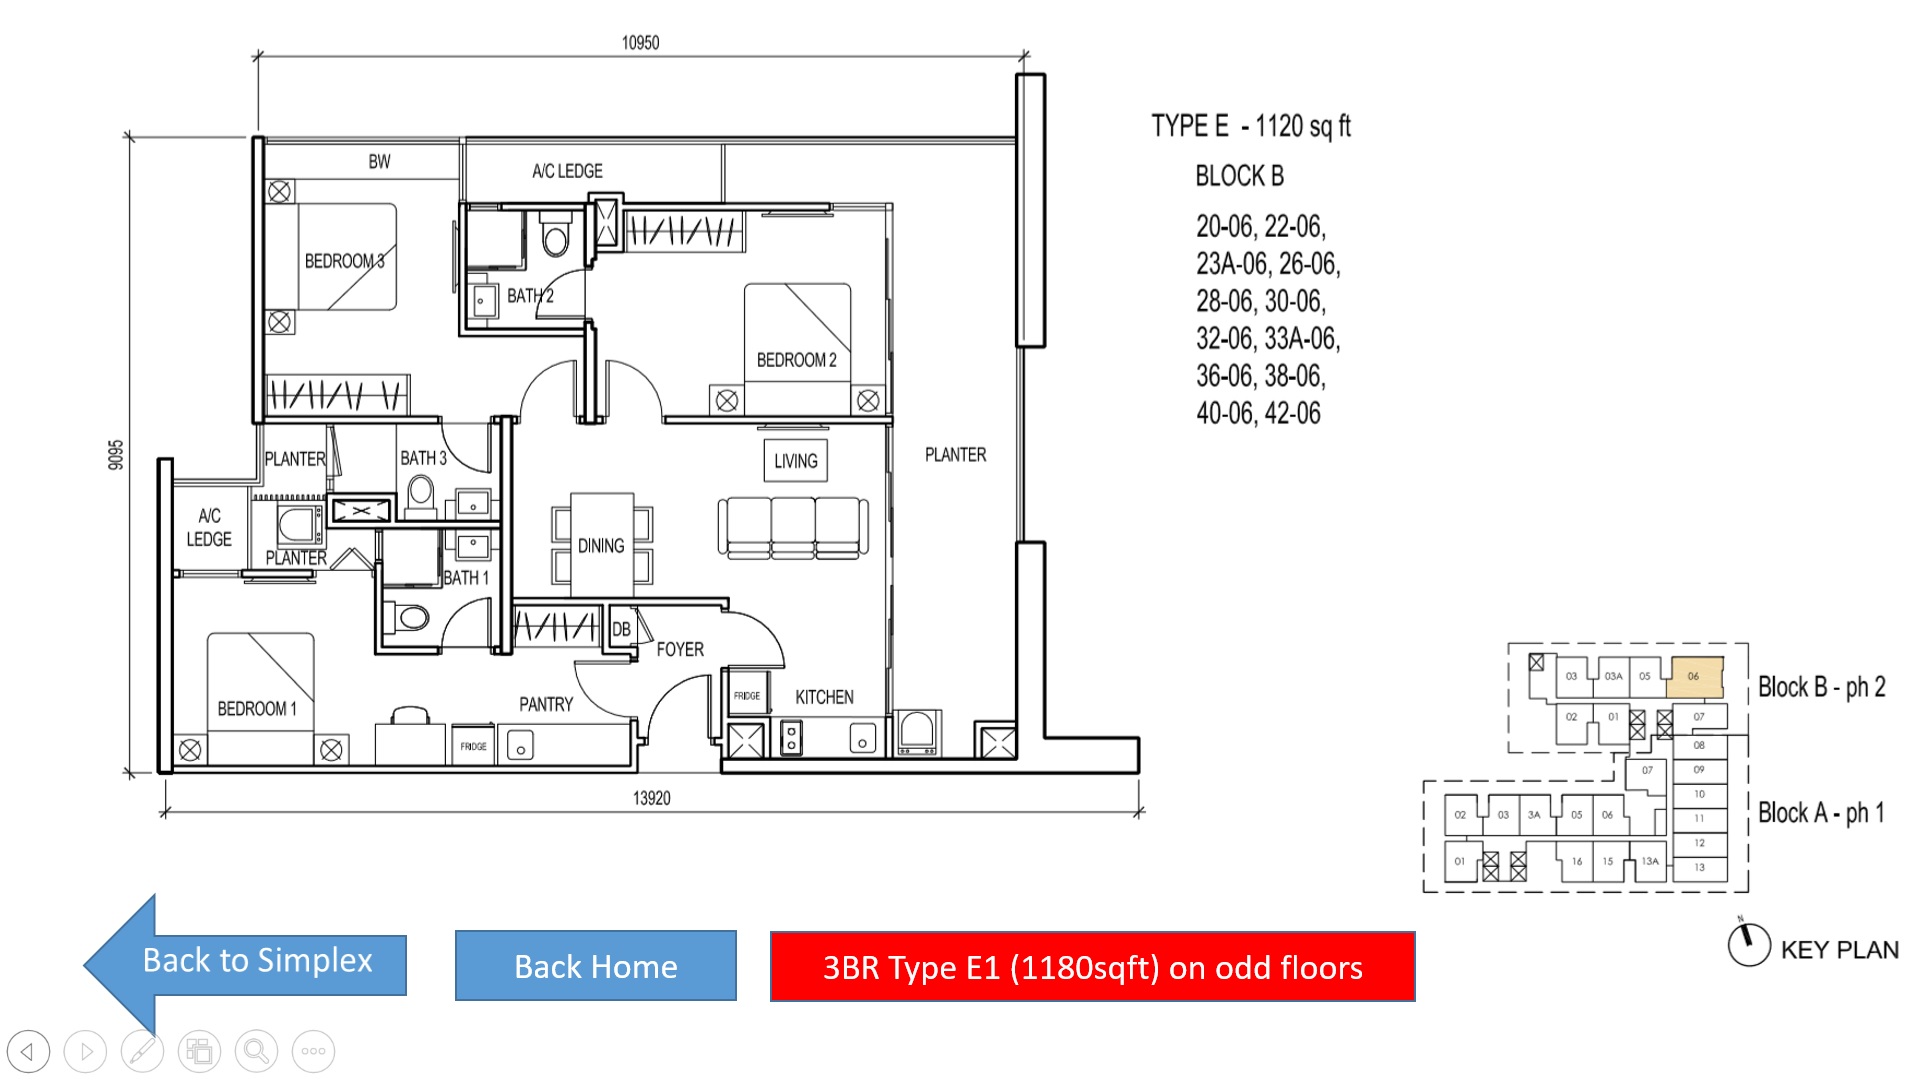 The Luxe KL Floor Plan 3BR Simplex - Type E (1120sqft)